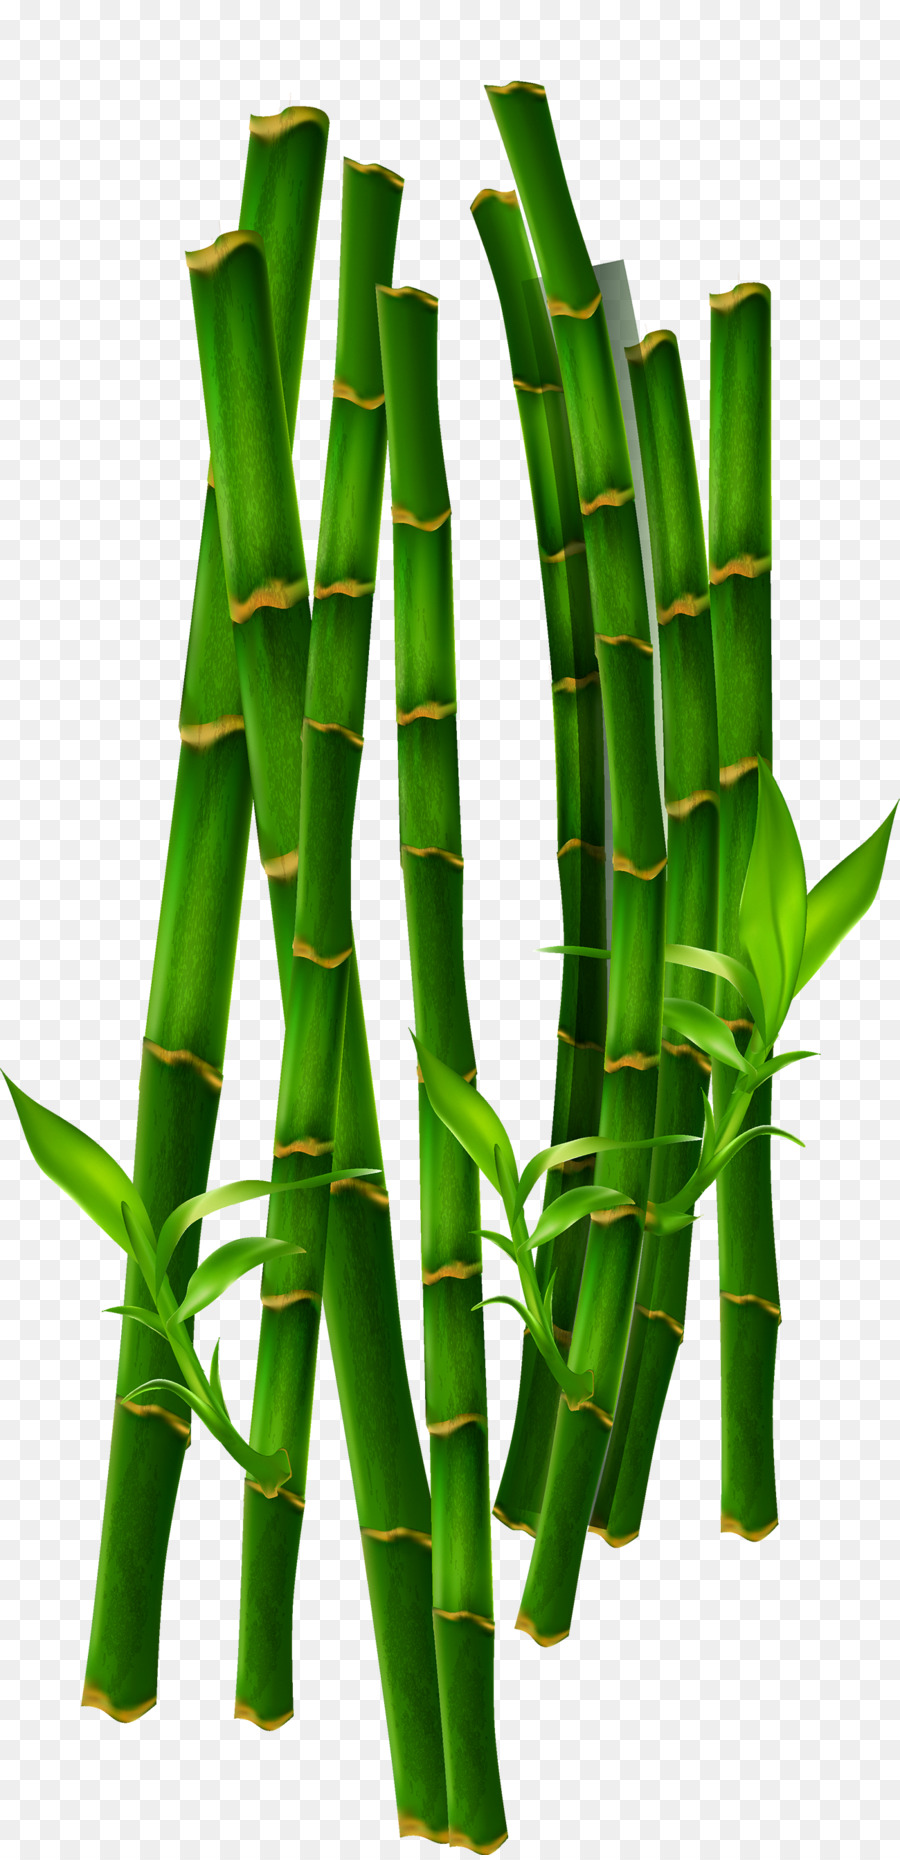 Bamboo Bamboe file di Computer - Bambù verde